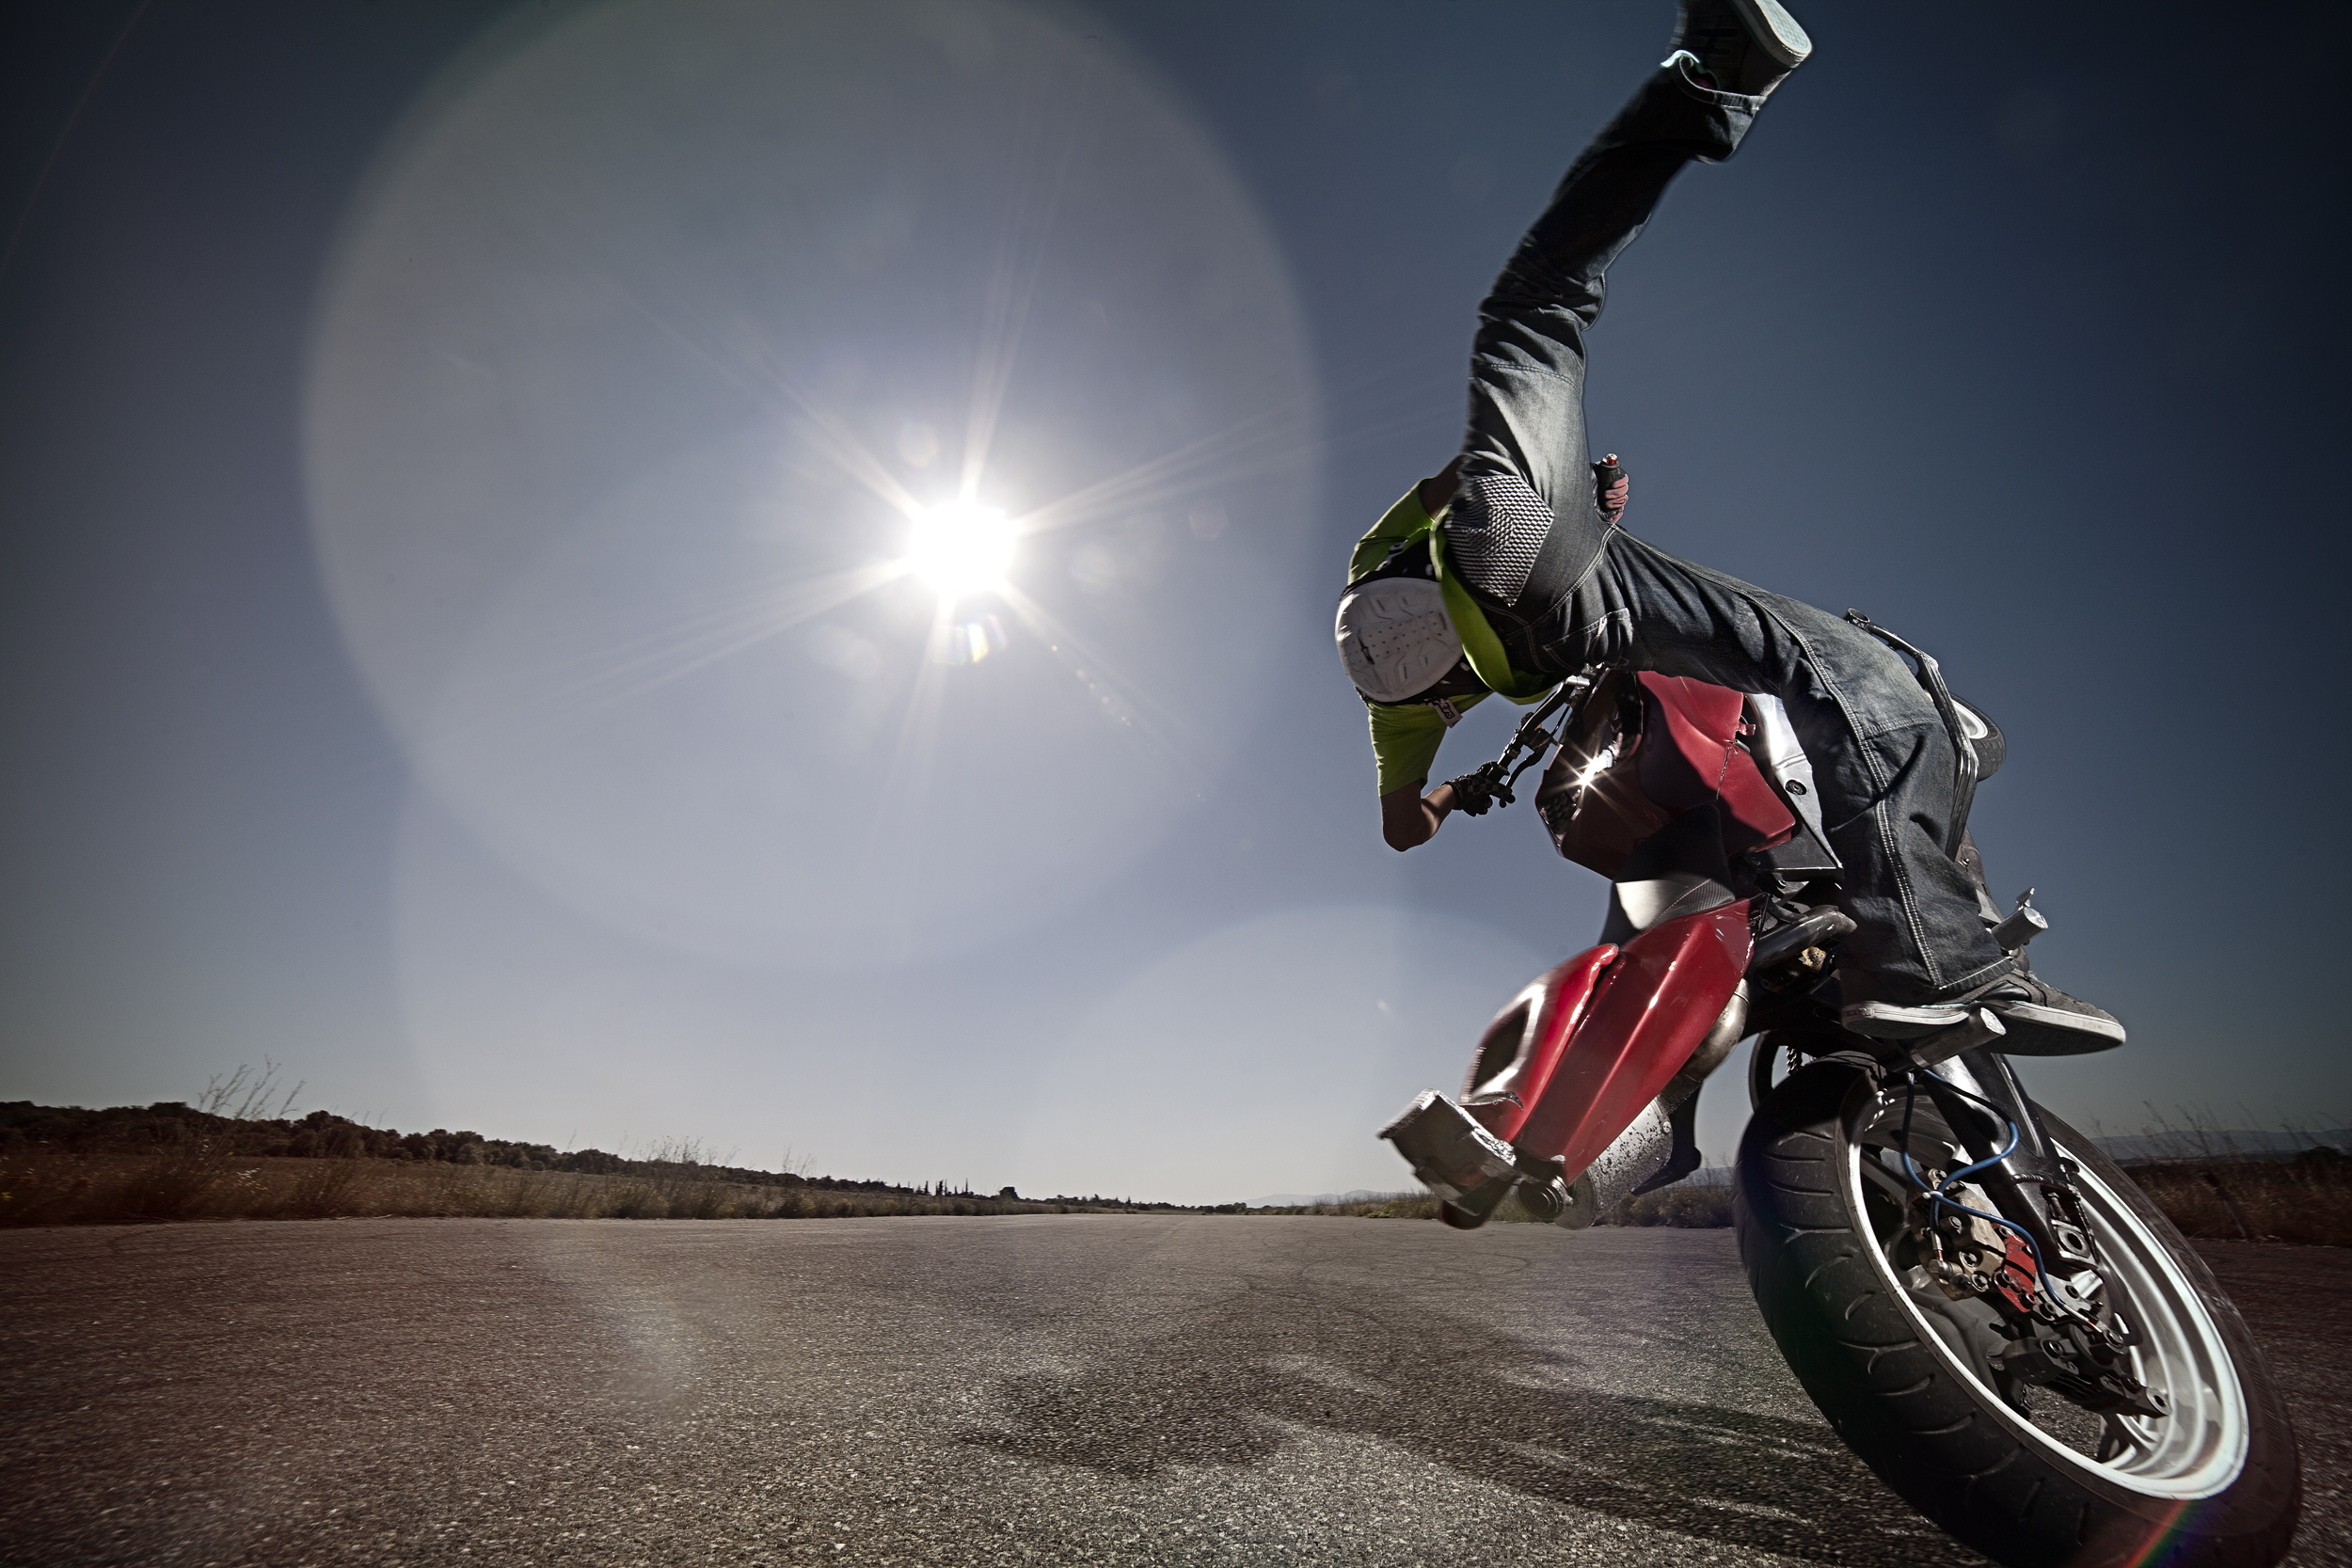 Motor bike Stunt rider